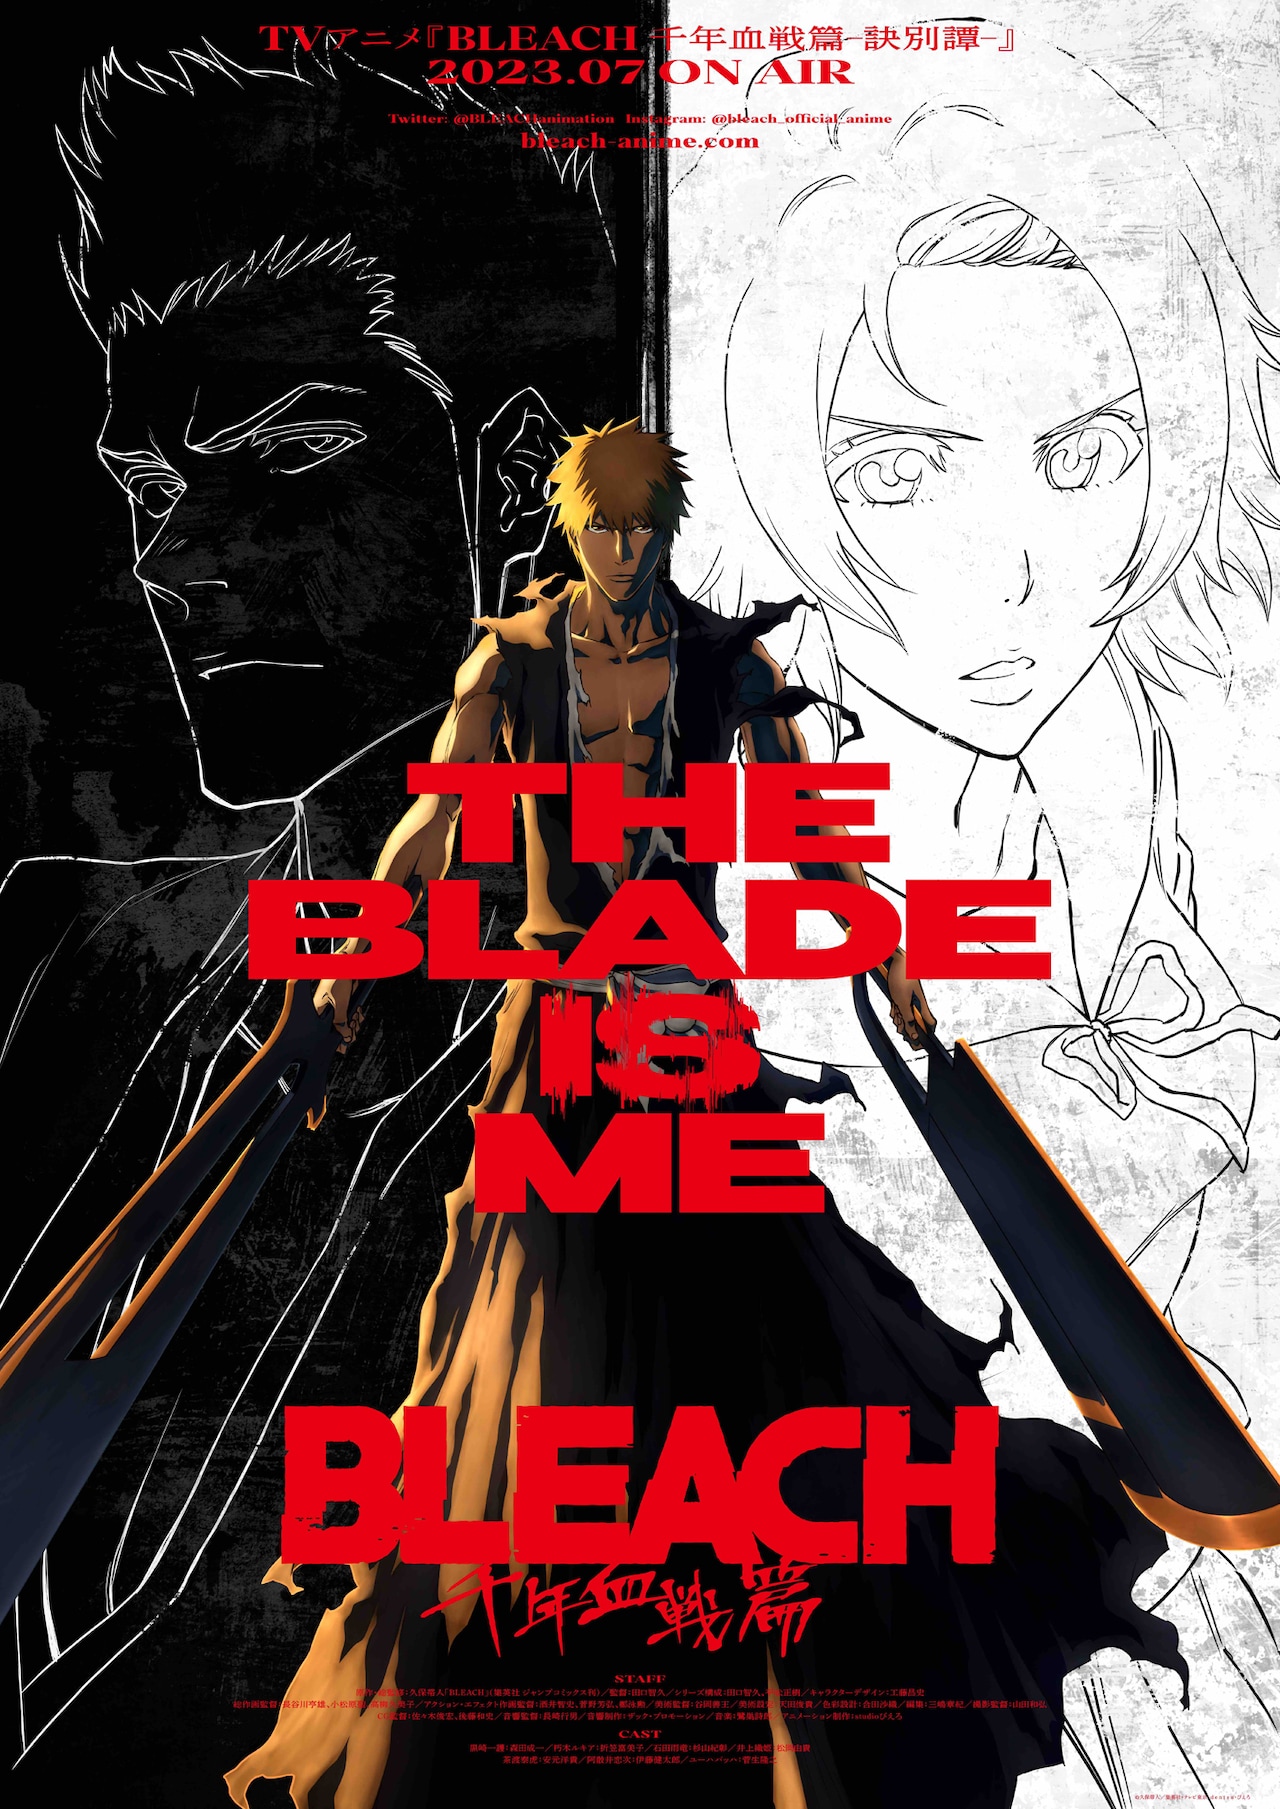 Bleach: Novo anime estreia em 2022; assista ao trailer